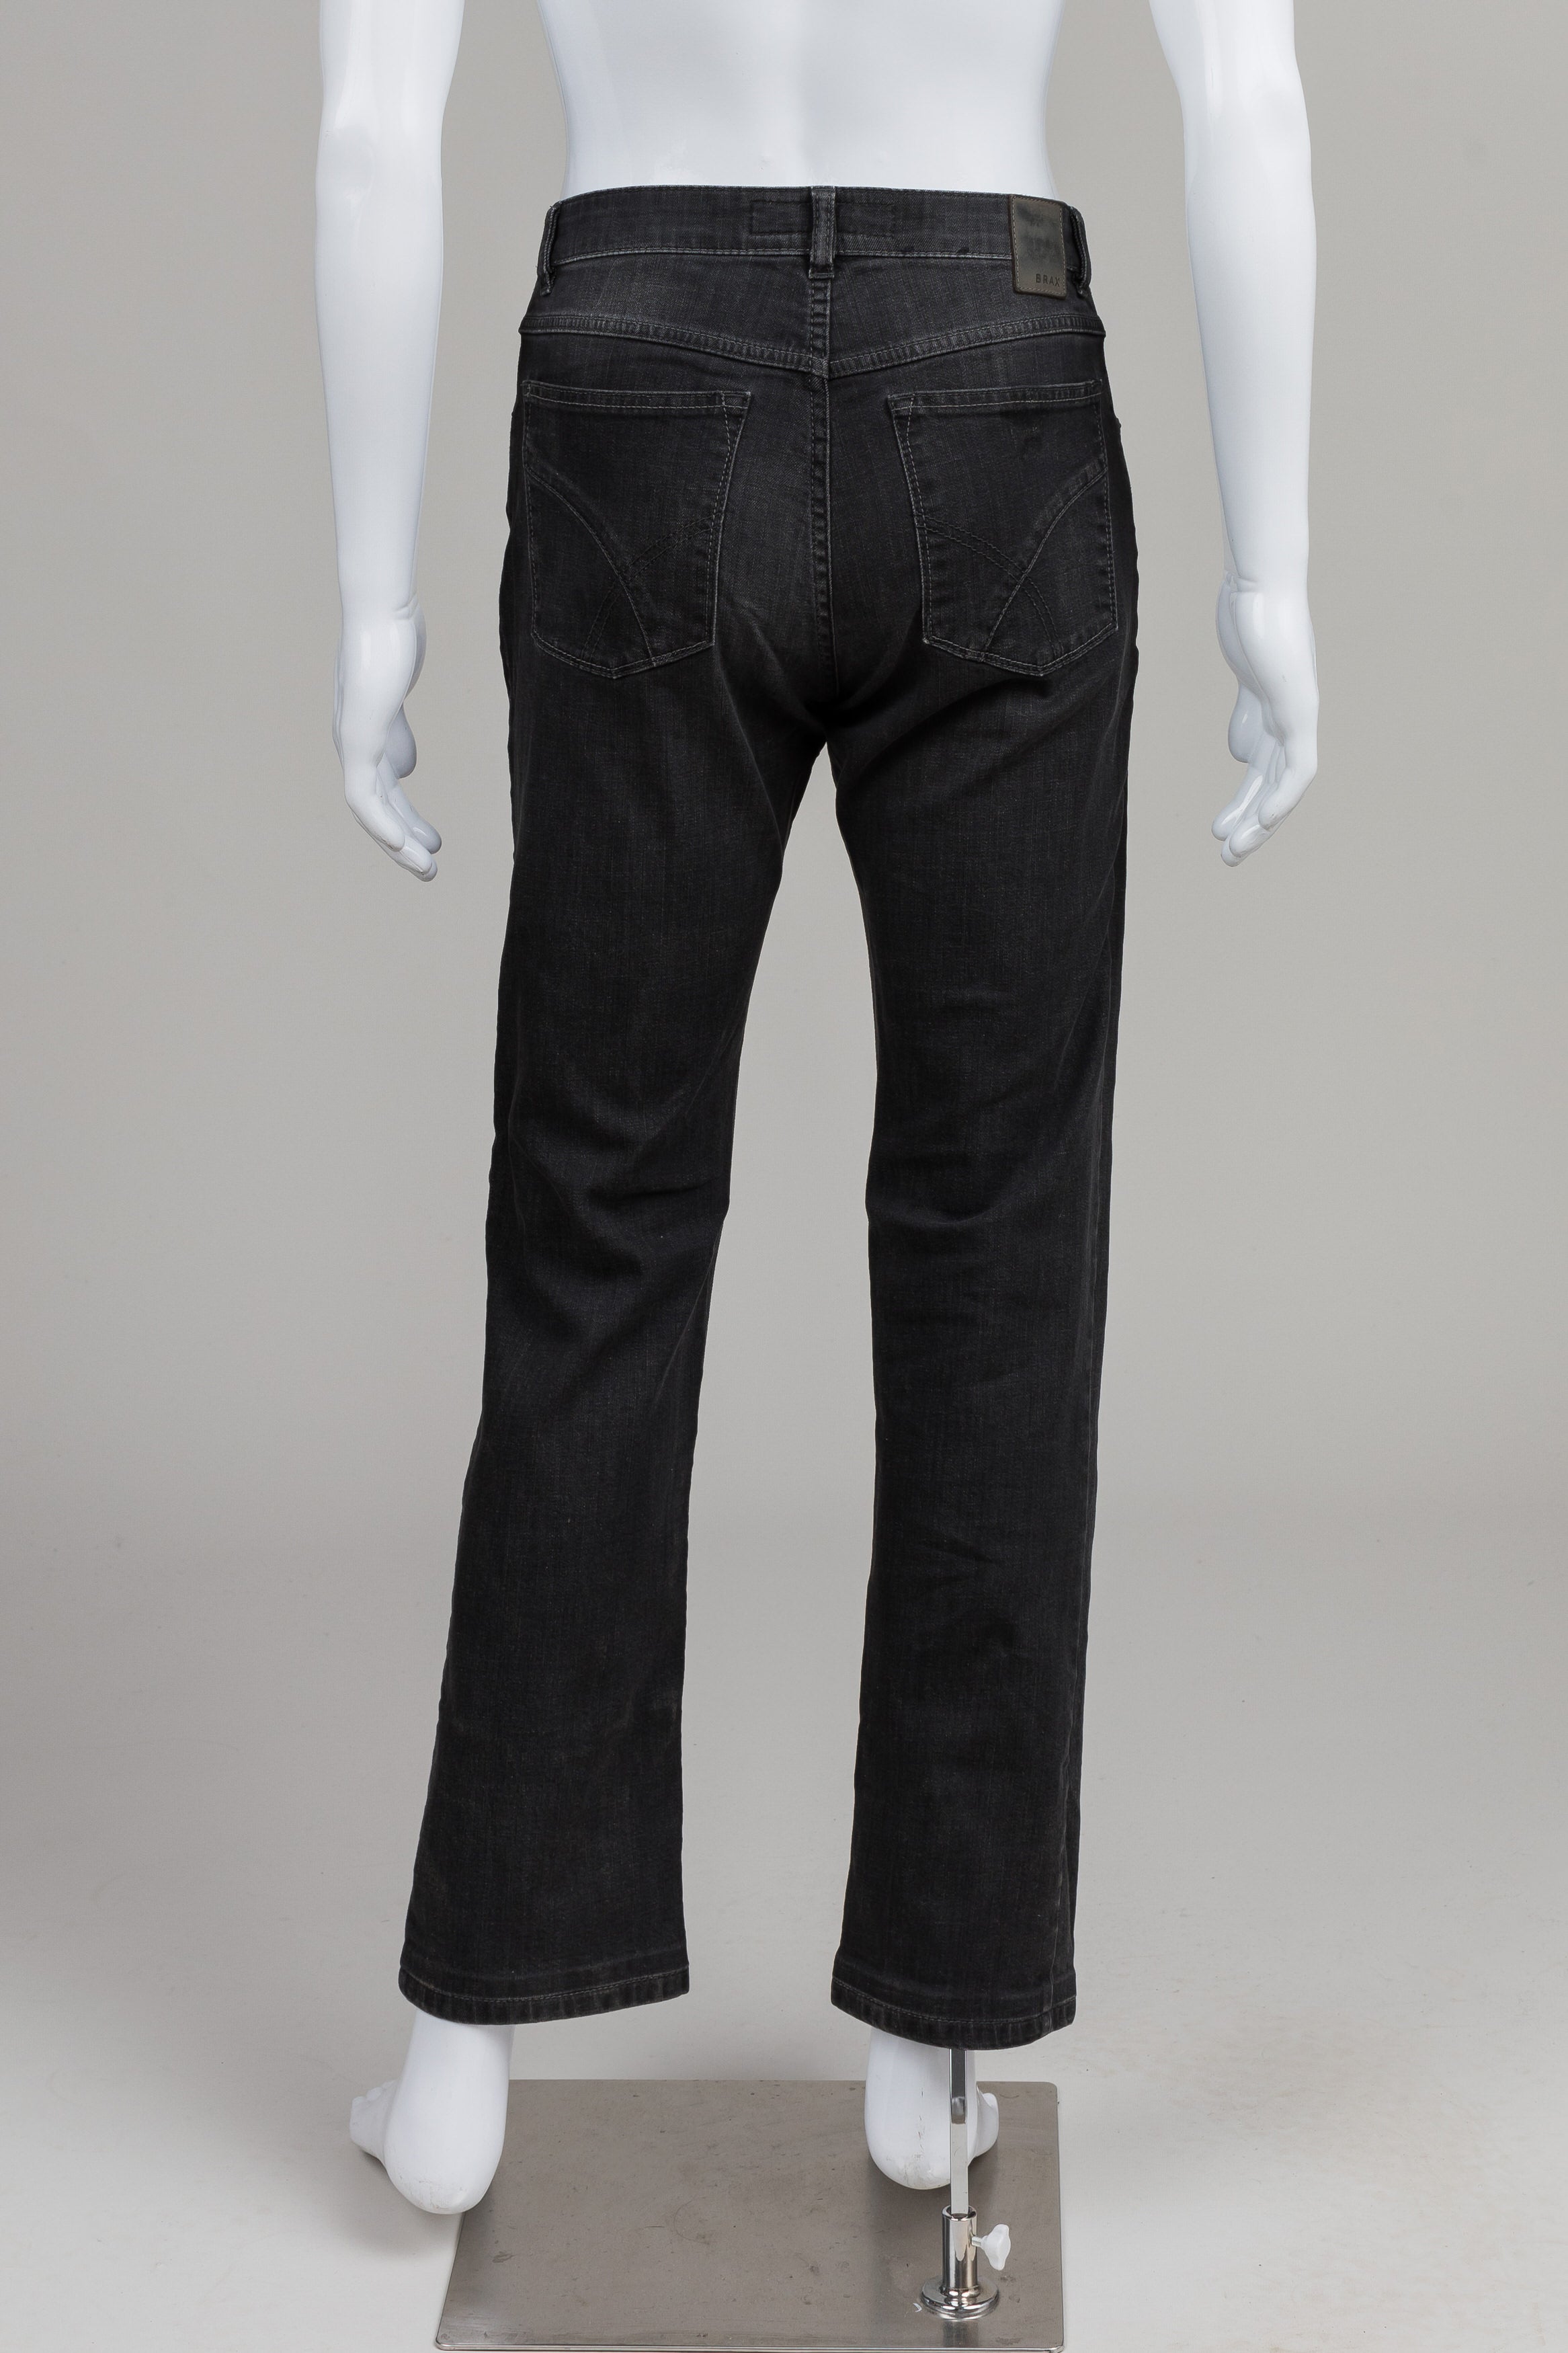 Brax Black Jeans (32x34)